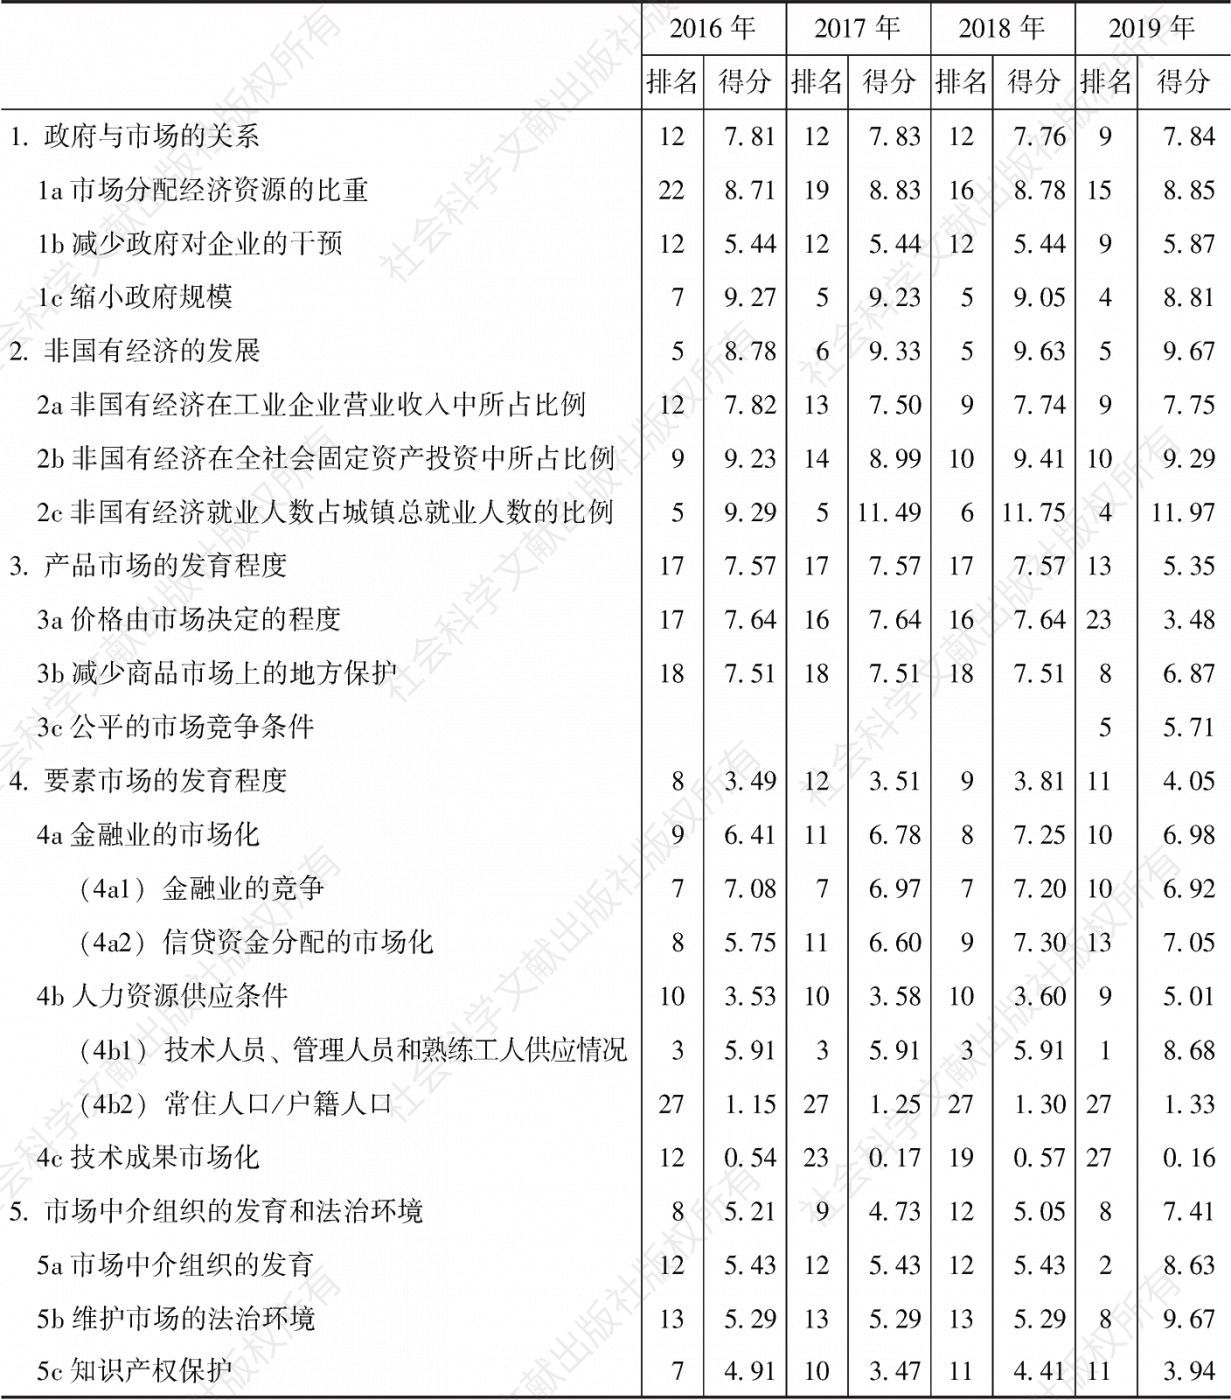 重庆市场化各方面指数和分项指数的排名及得分